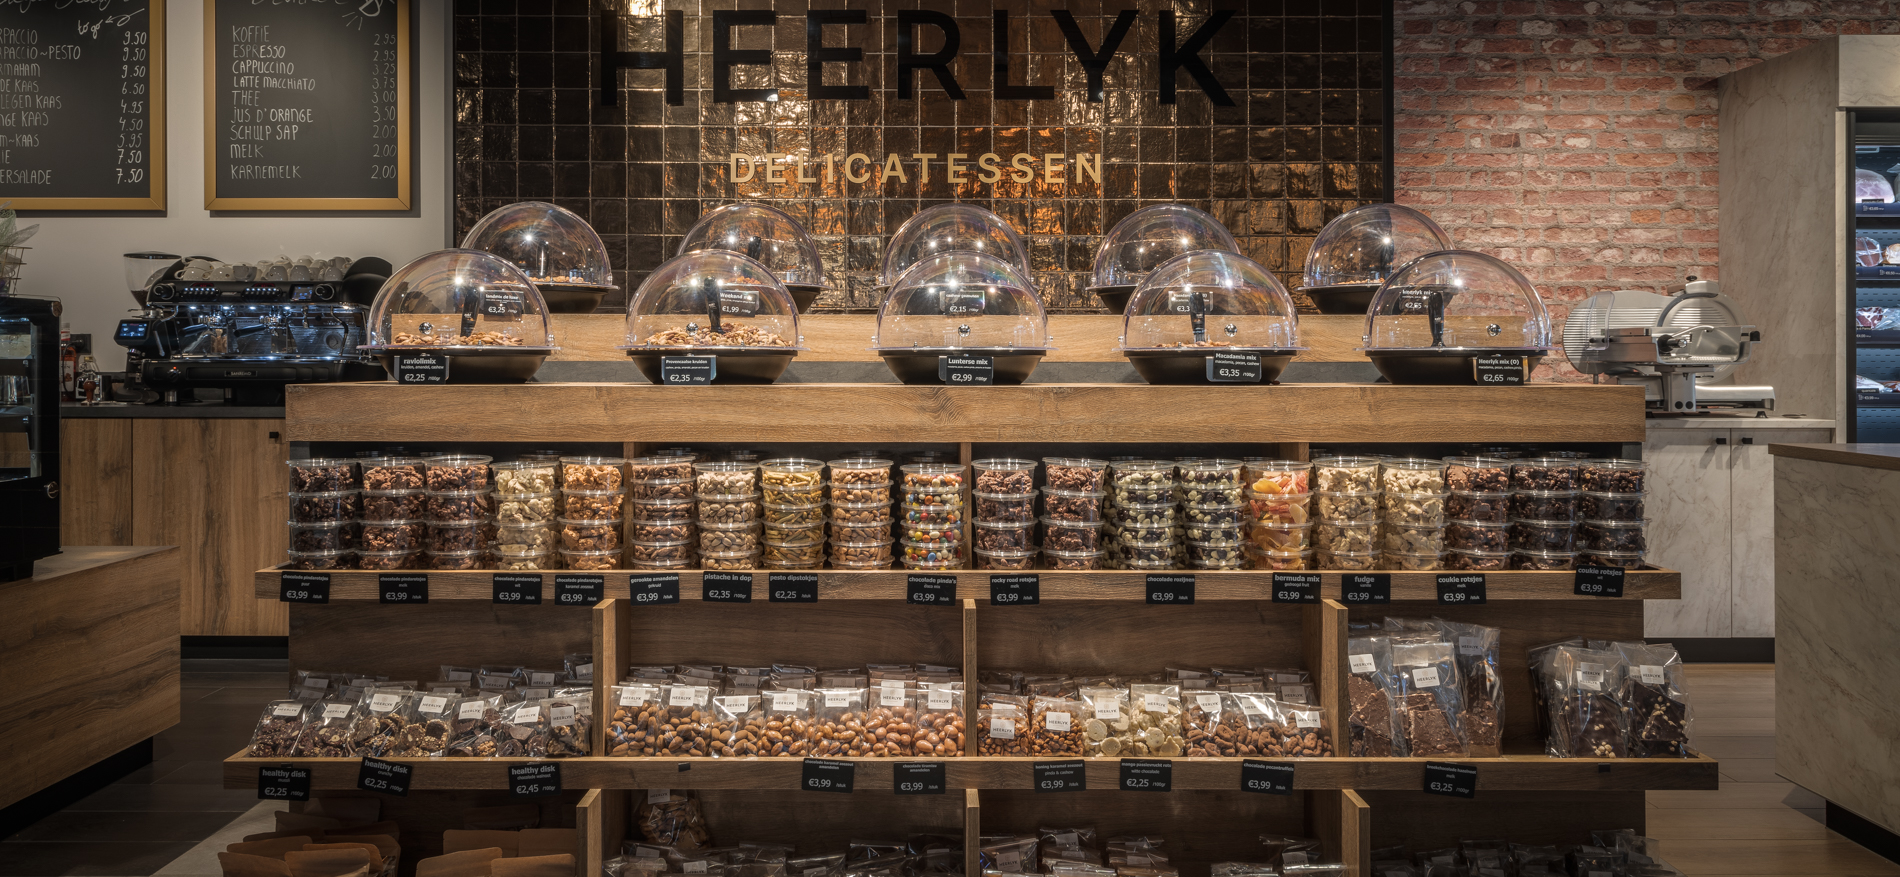 Heerlyk Delicatessen | Lunteren (NL) - Food